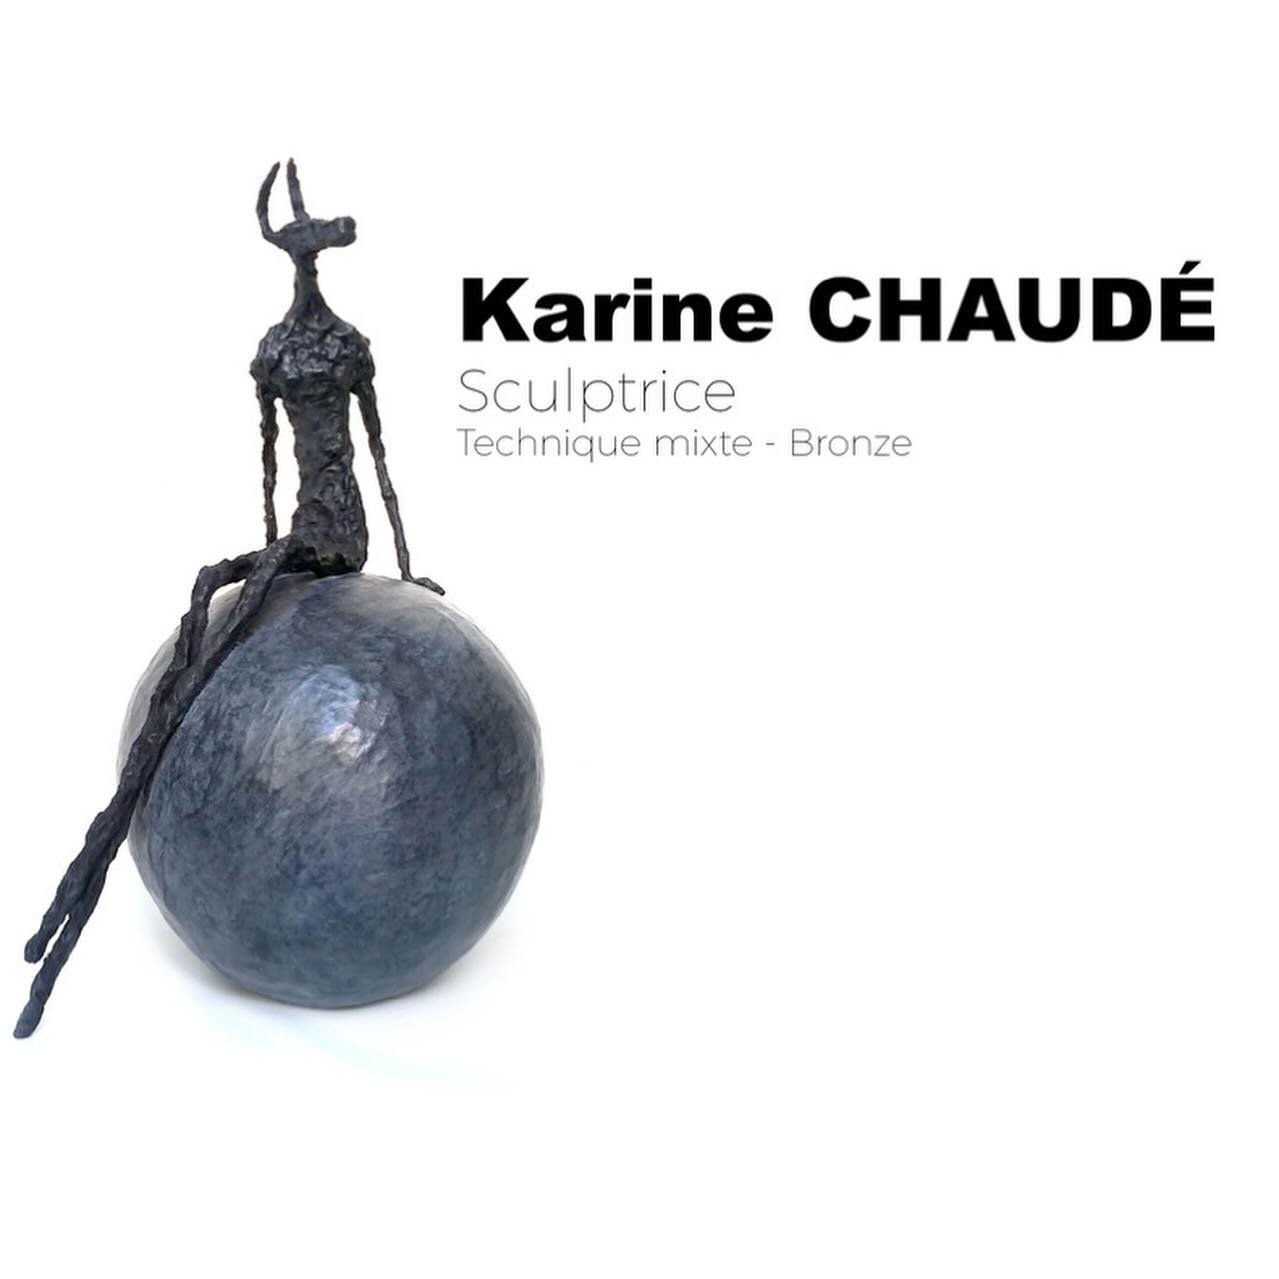 S&eacute;lection de sculptures&hellip; 
- Karine CHAUD&Eacute; - &laquo;&nbsp;le Toi du monde&nbsp;&raquo; - Bronze
- S&eacute;bastien CHARTIER - &laquo;&nbsp;Origine&nbsp;&raquo; - C&eacute;ramique 
- Marine DE SOOS - &laquo;&nbsp;&Agrave; l&rsquo;o